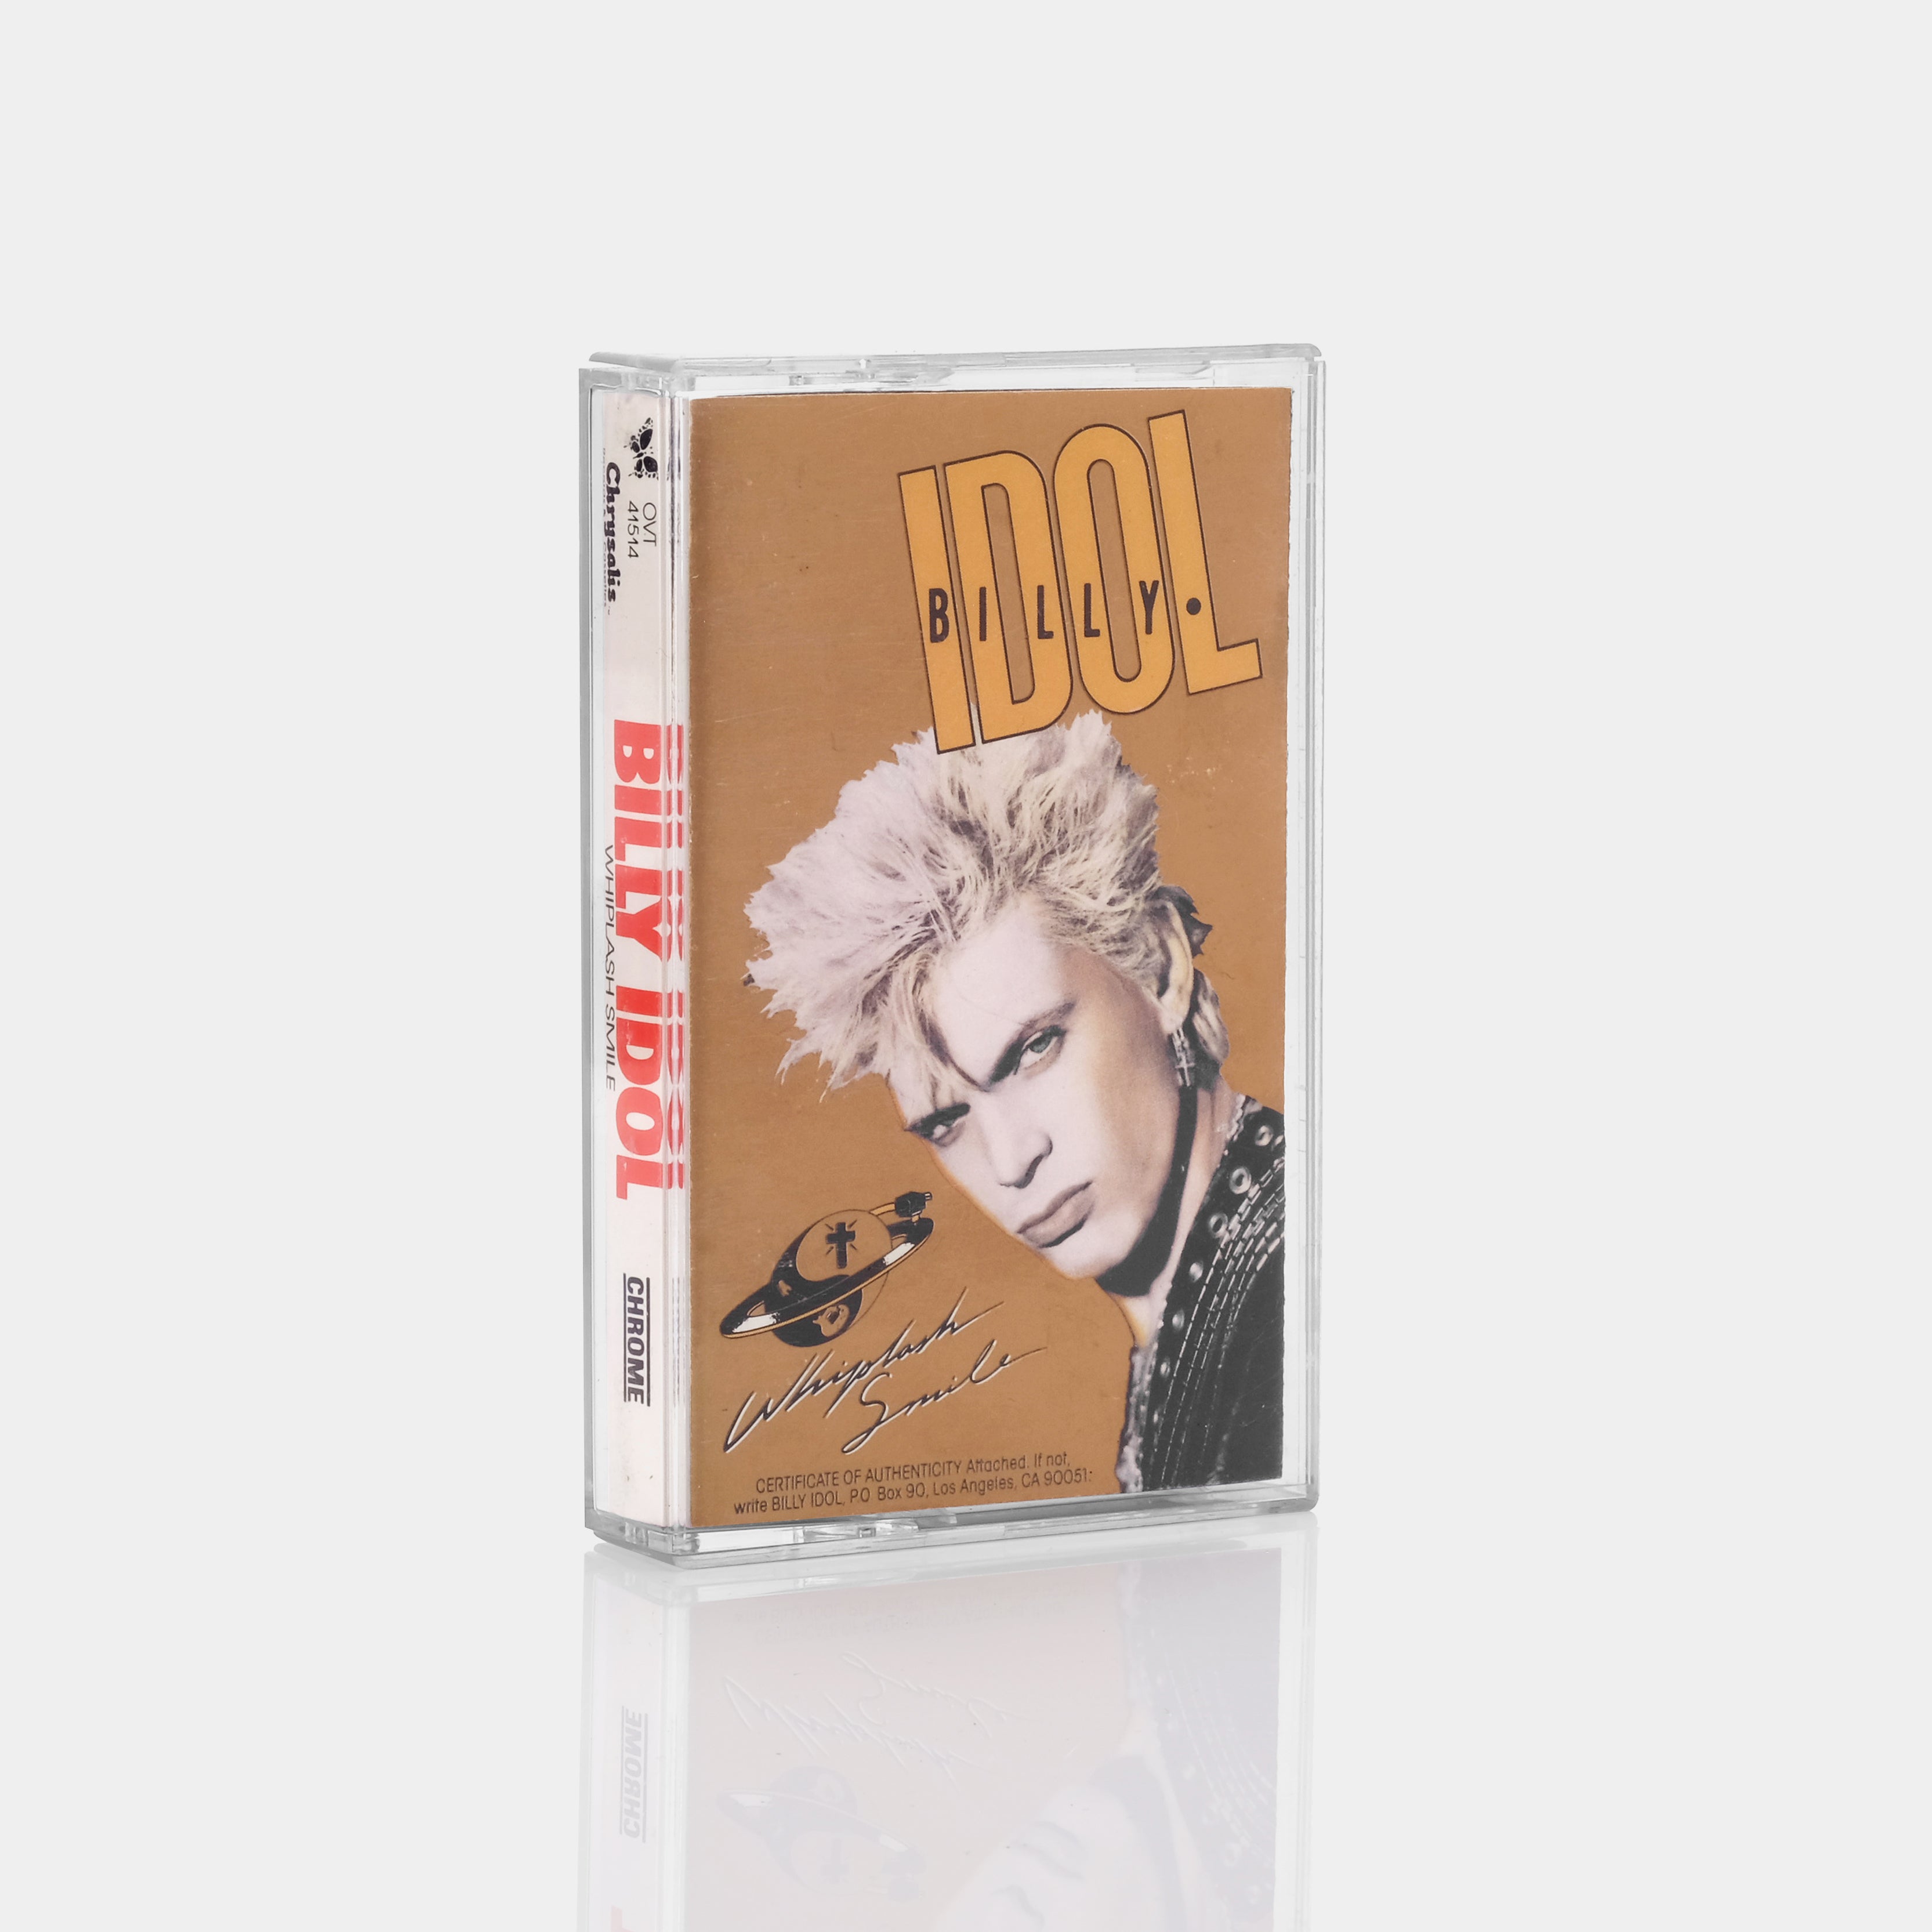 Billy Idol - Whiplash Smile Cassette Tape